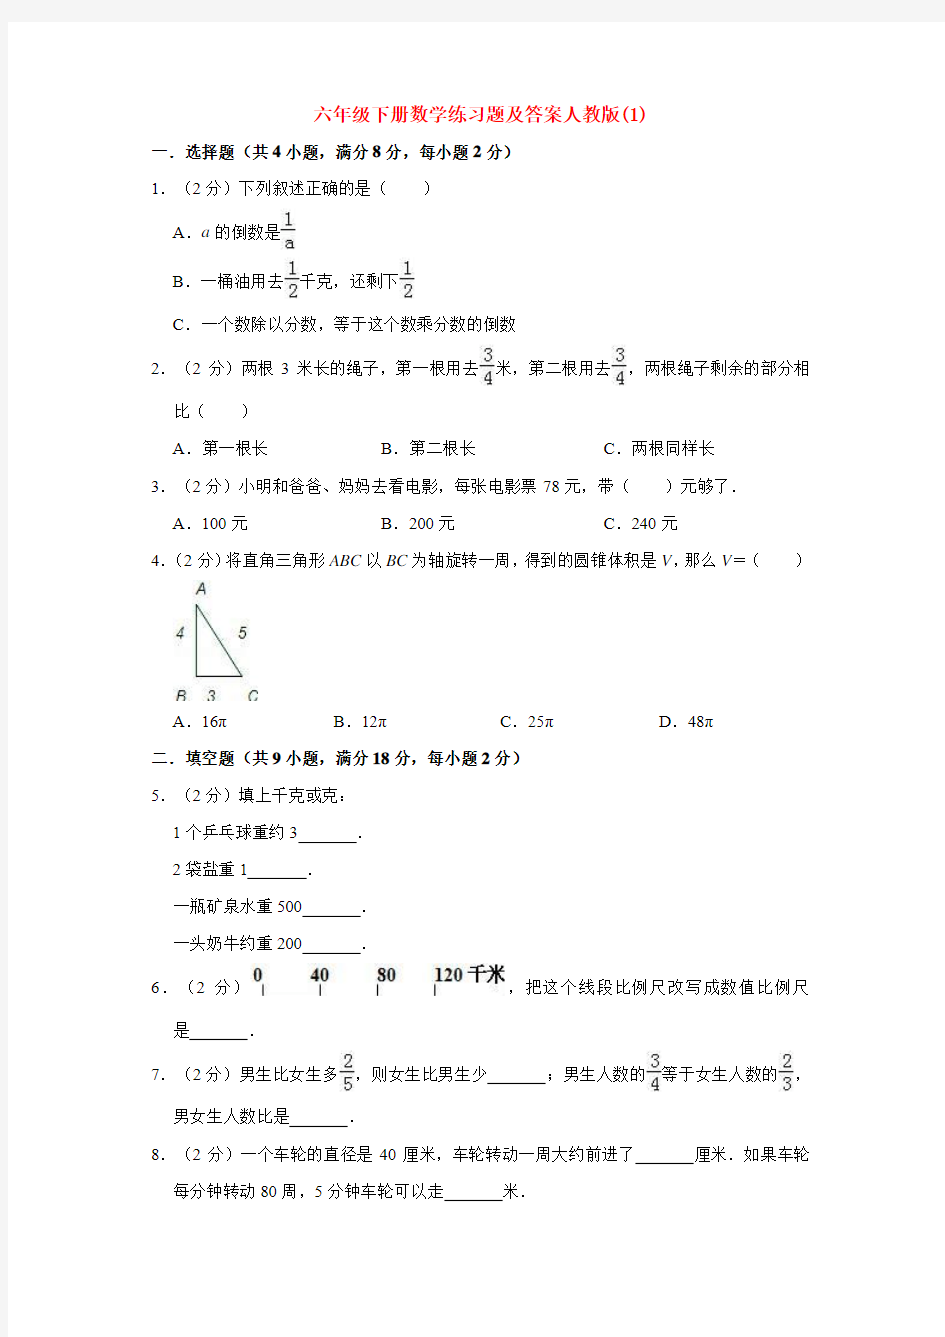 【10套试卷】北京汇文中学小升初一模数学精选及答案